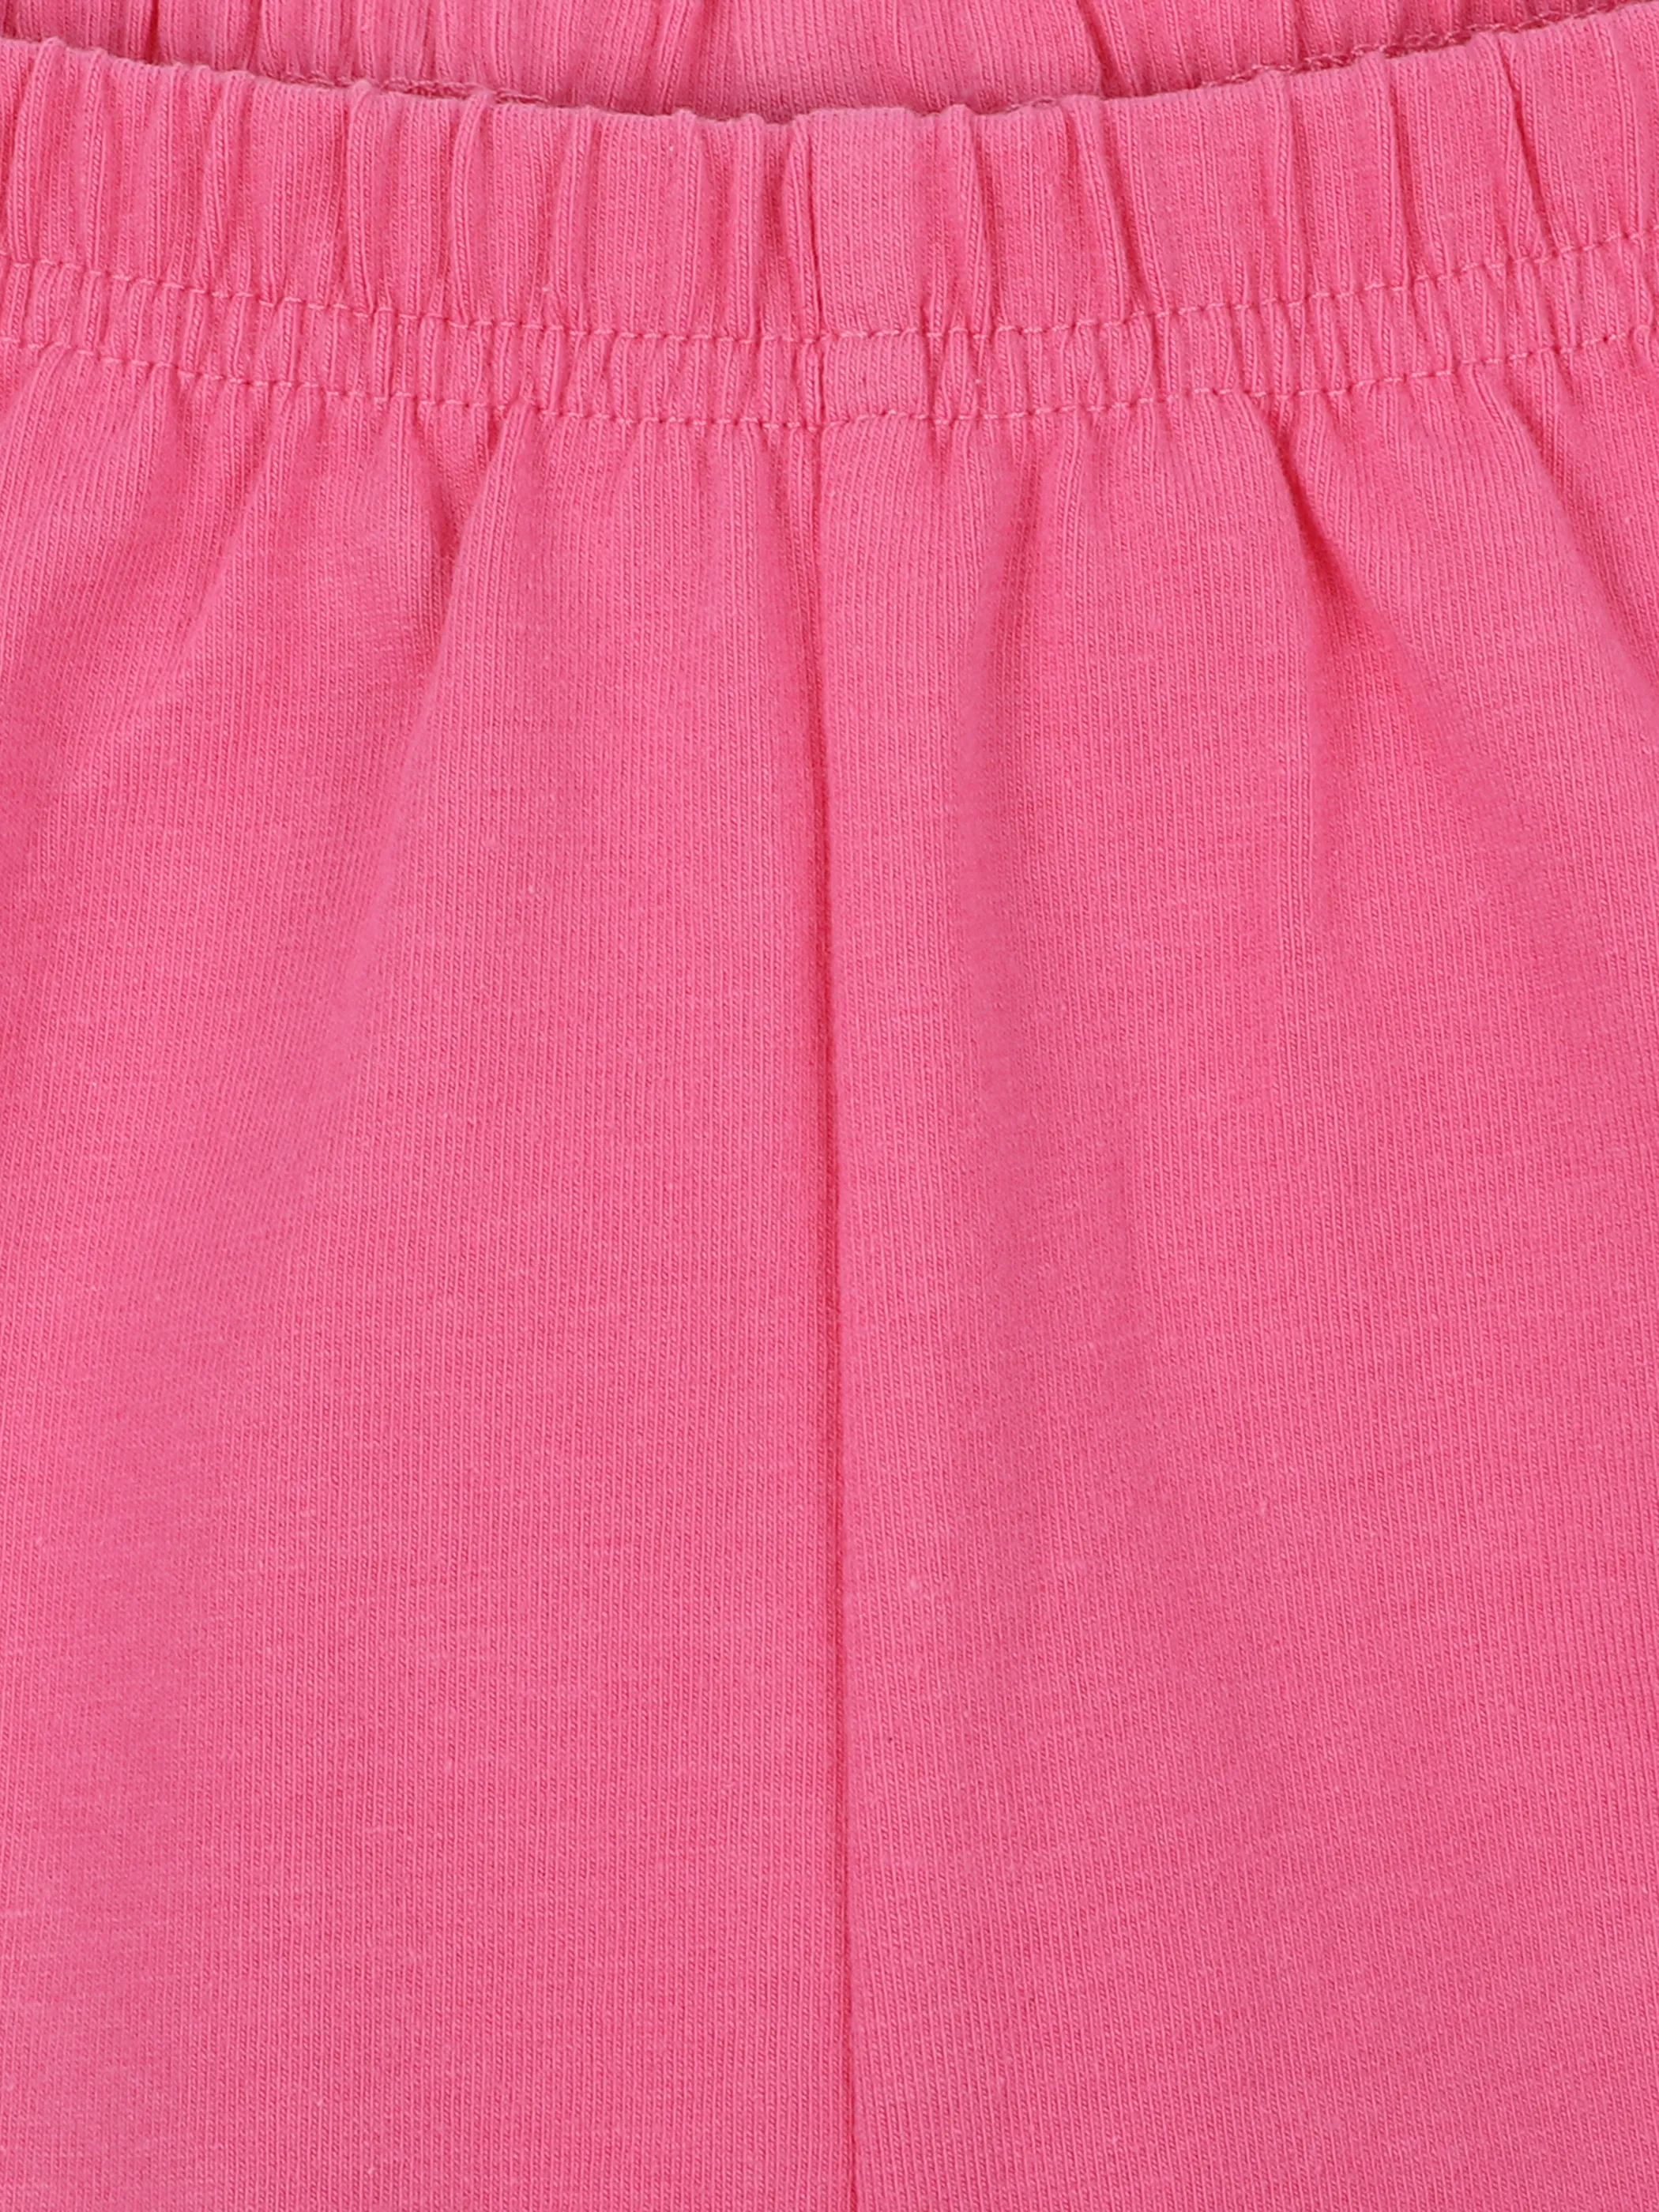 Stop + Go MG Radler Leggings in uni pink Pink 862329 PINK 3